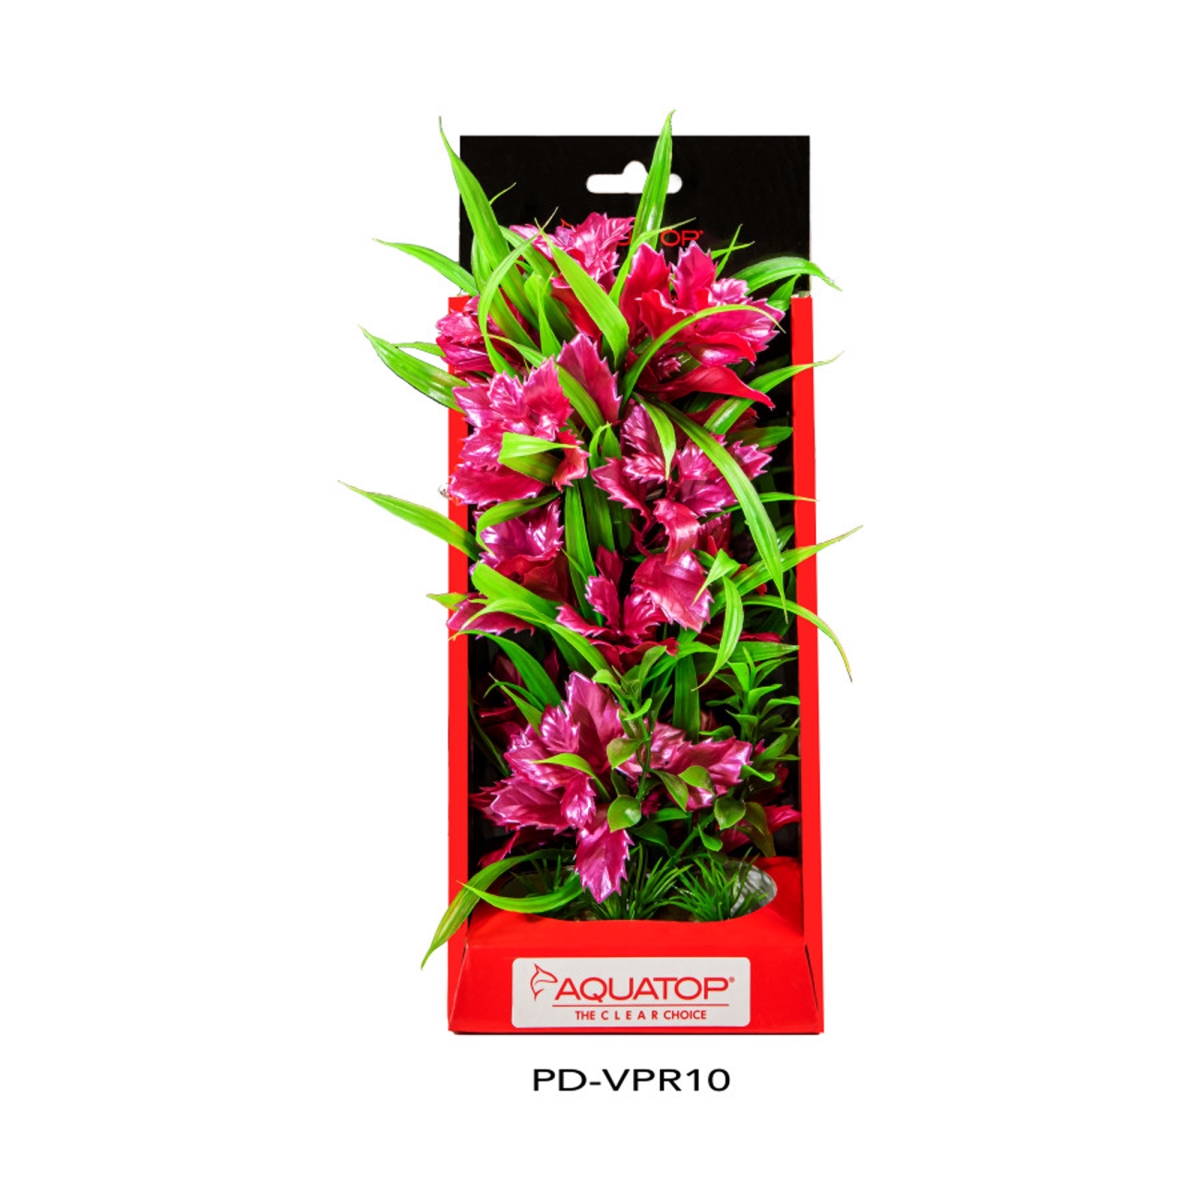 Picture of Aquatop 810074880152 Vibrant Aquarium Passion Plant - Rose - 10 in.